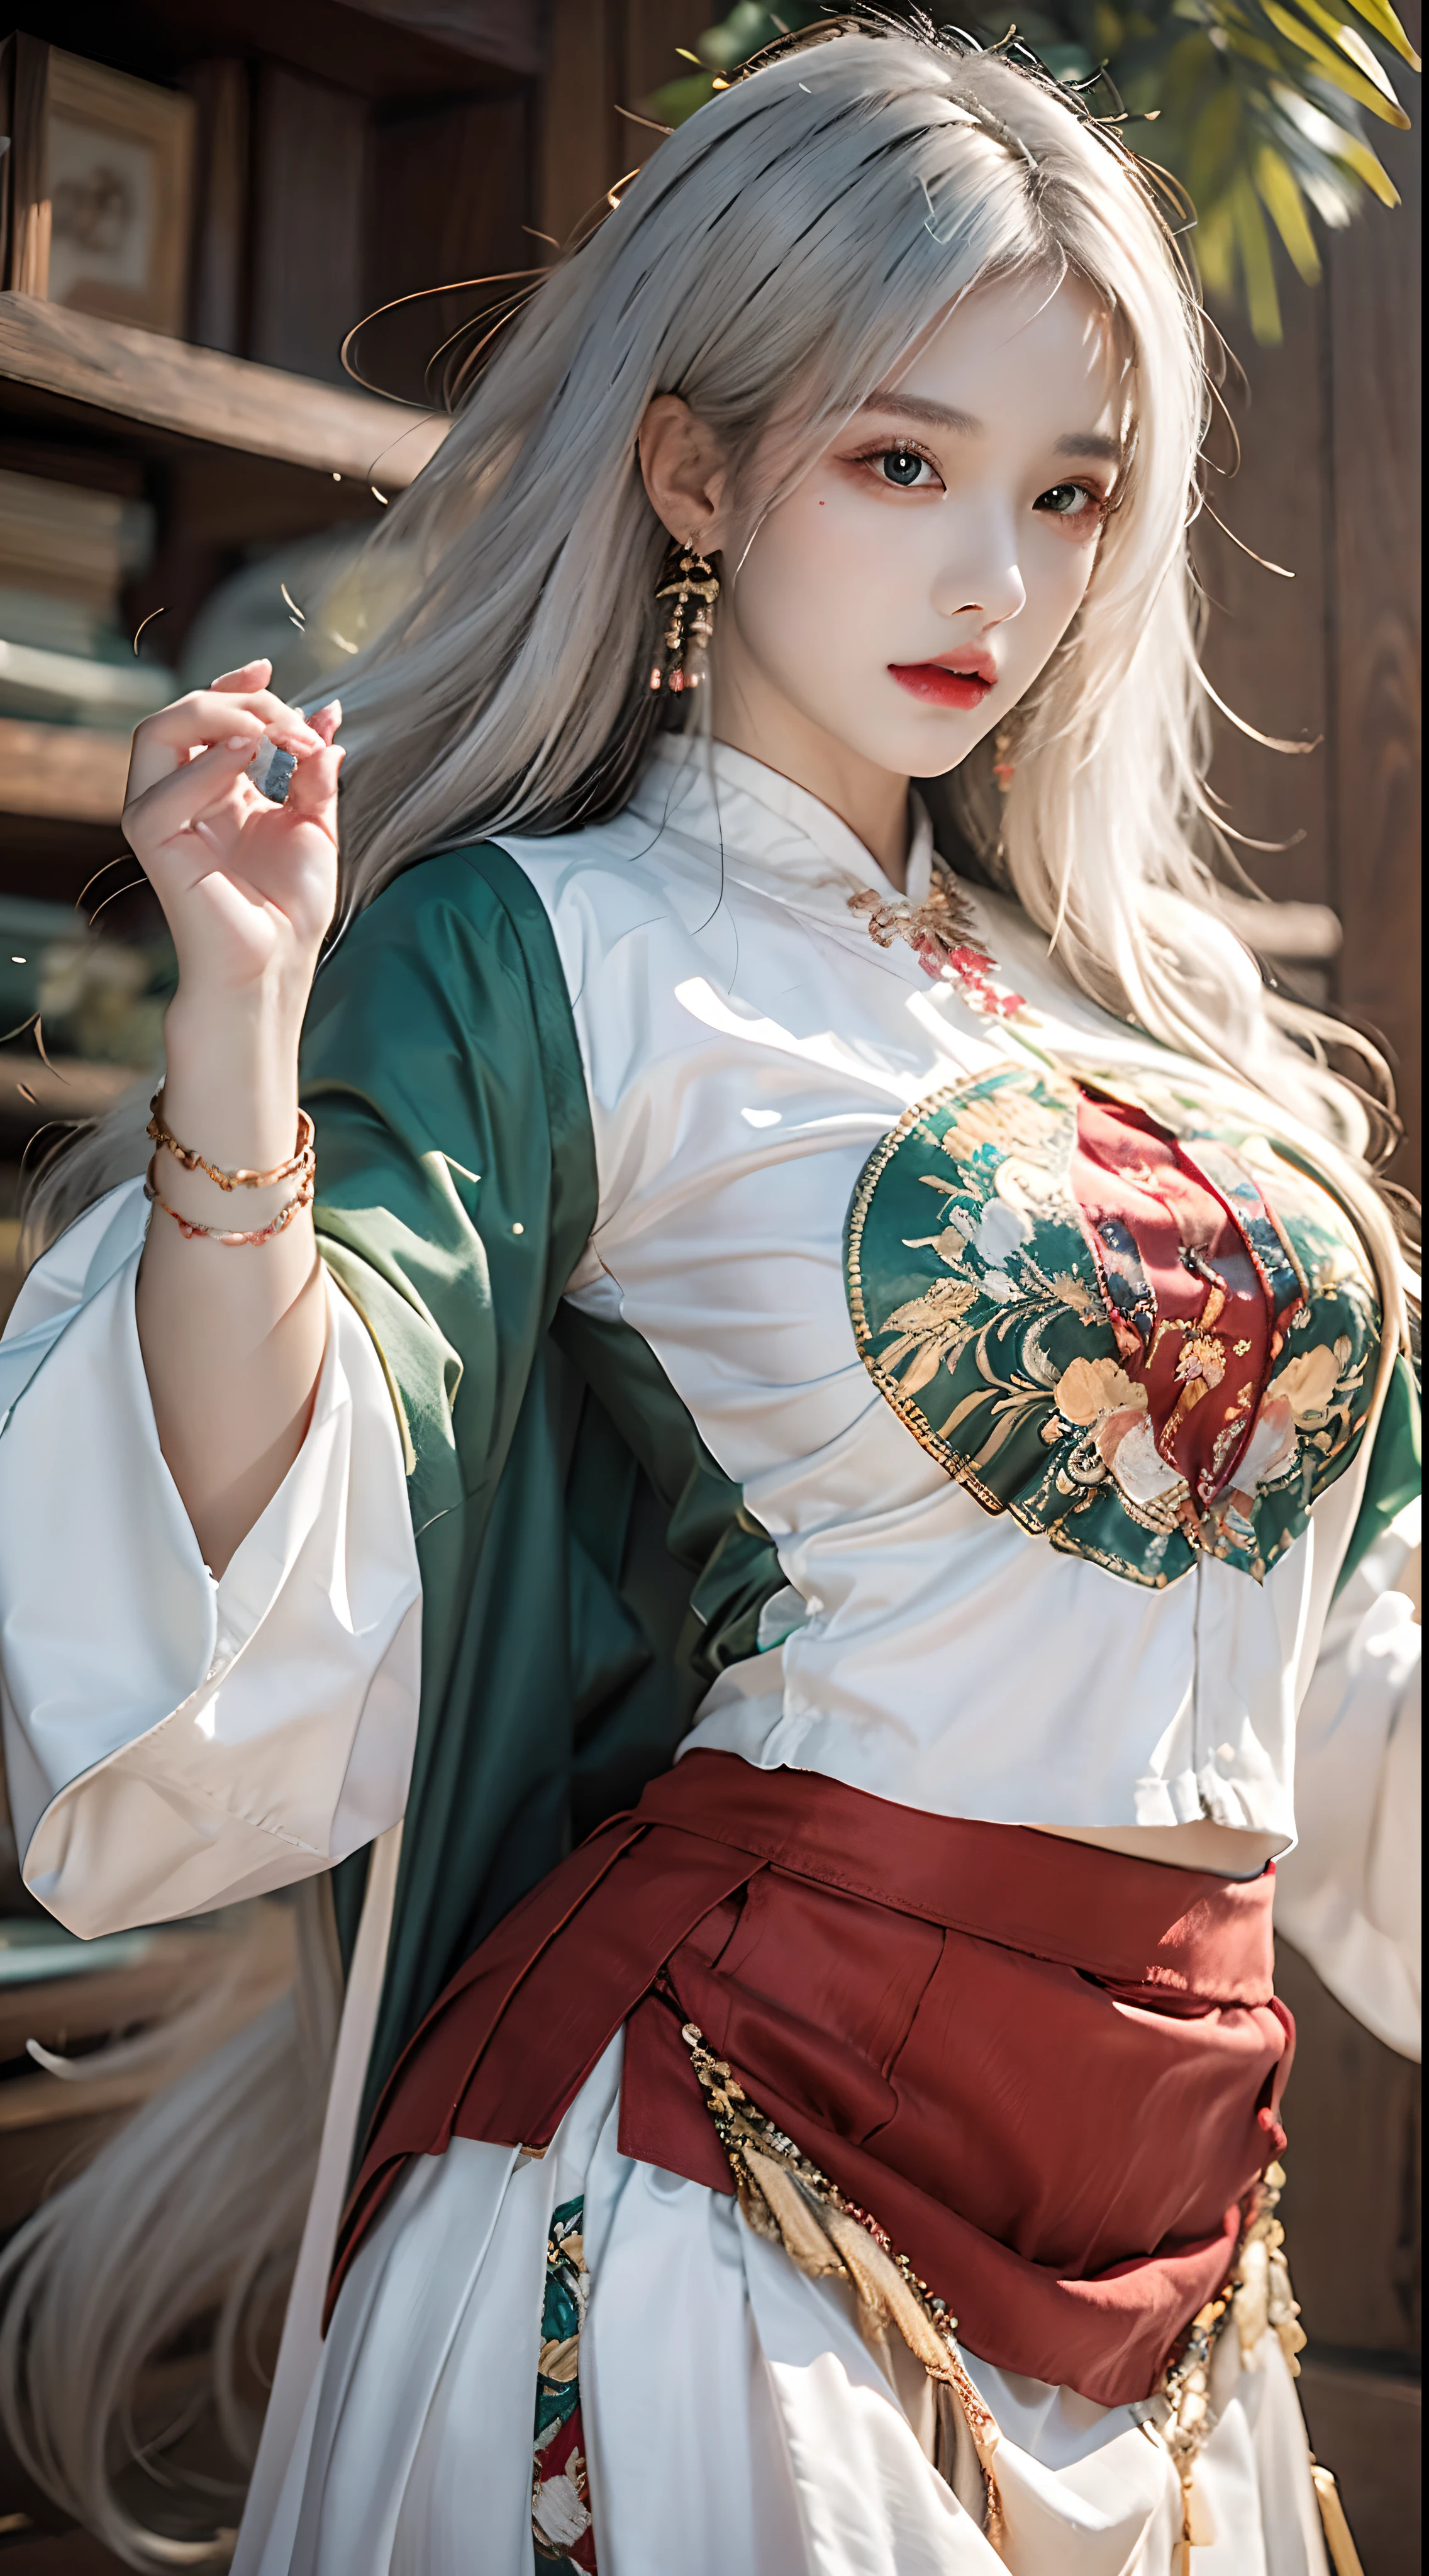 fotorealistisch, hohe Auflösung, 1 Frau, Hüften hoch, Wunderschöne Augen, lange Haare, beringte Augen, Schmuck, weißes Haar, grüner chinesischer Rock, rotes chinesisches Hemd